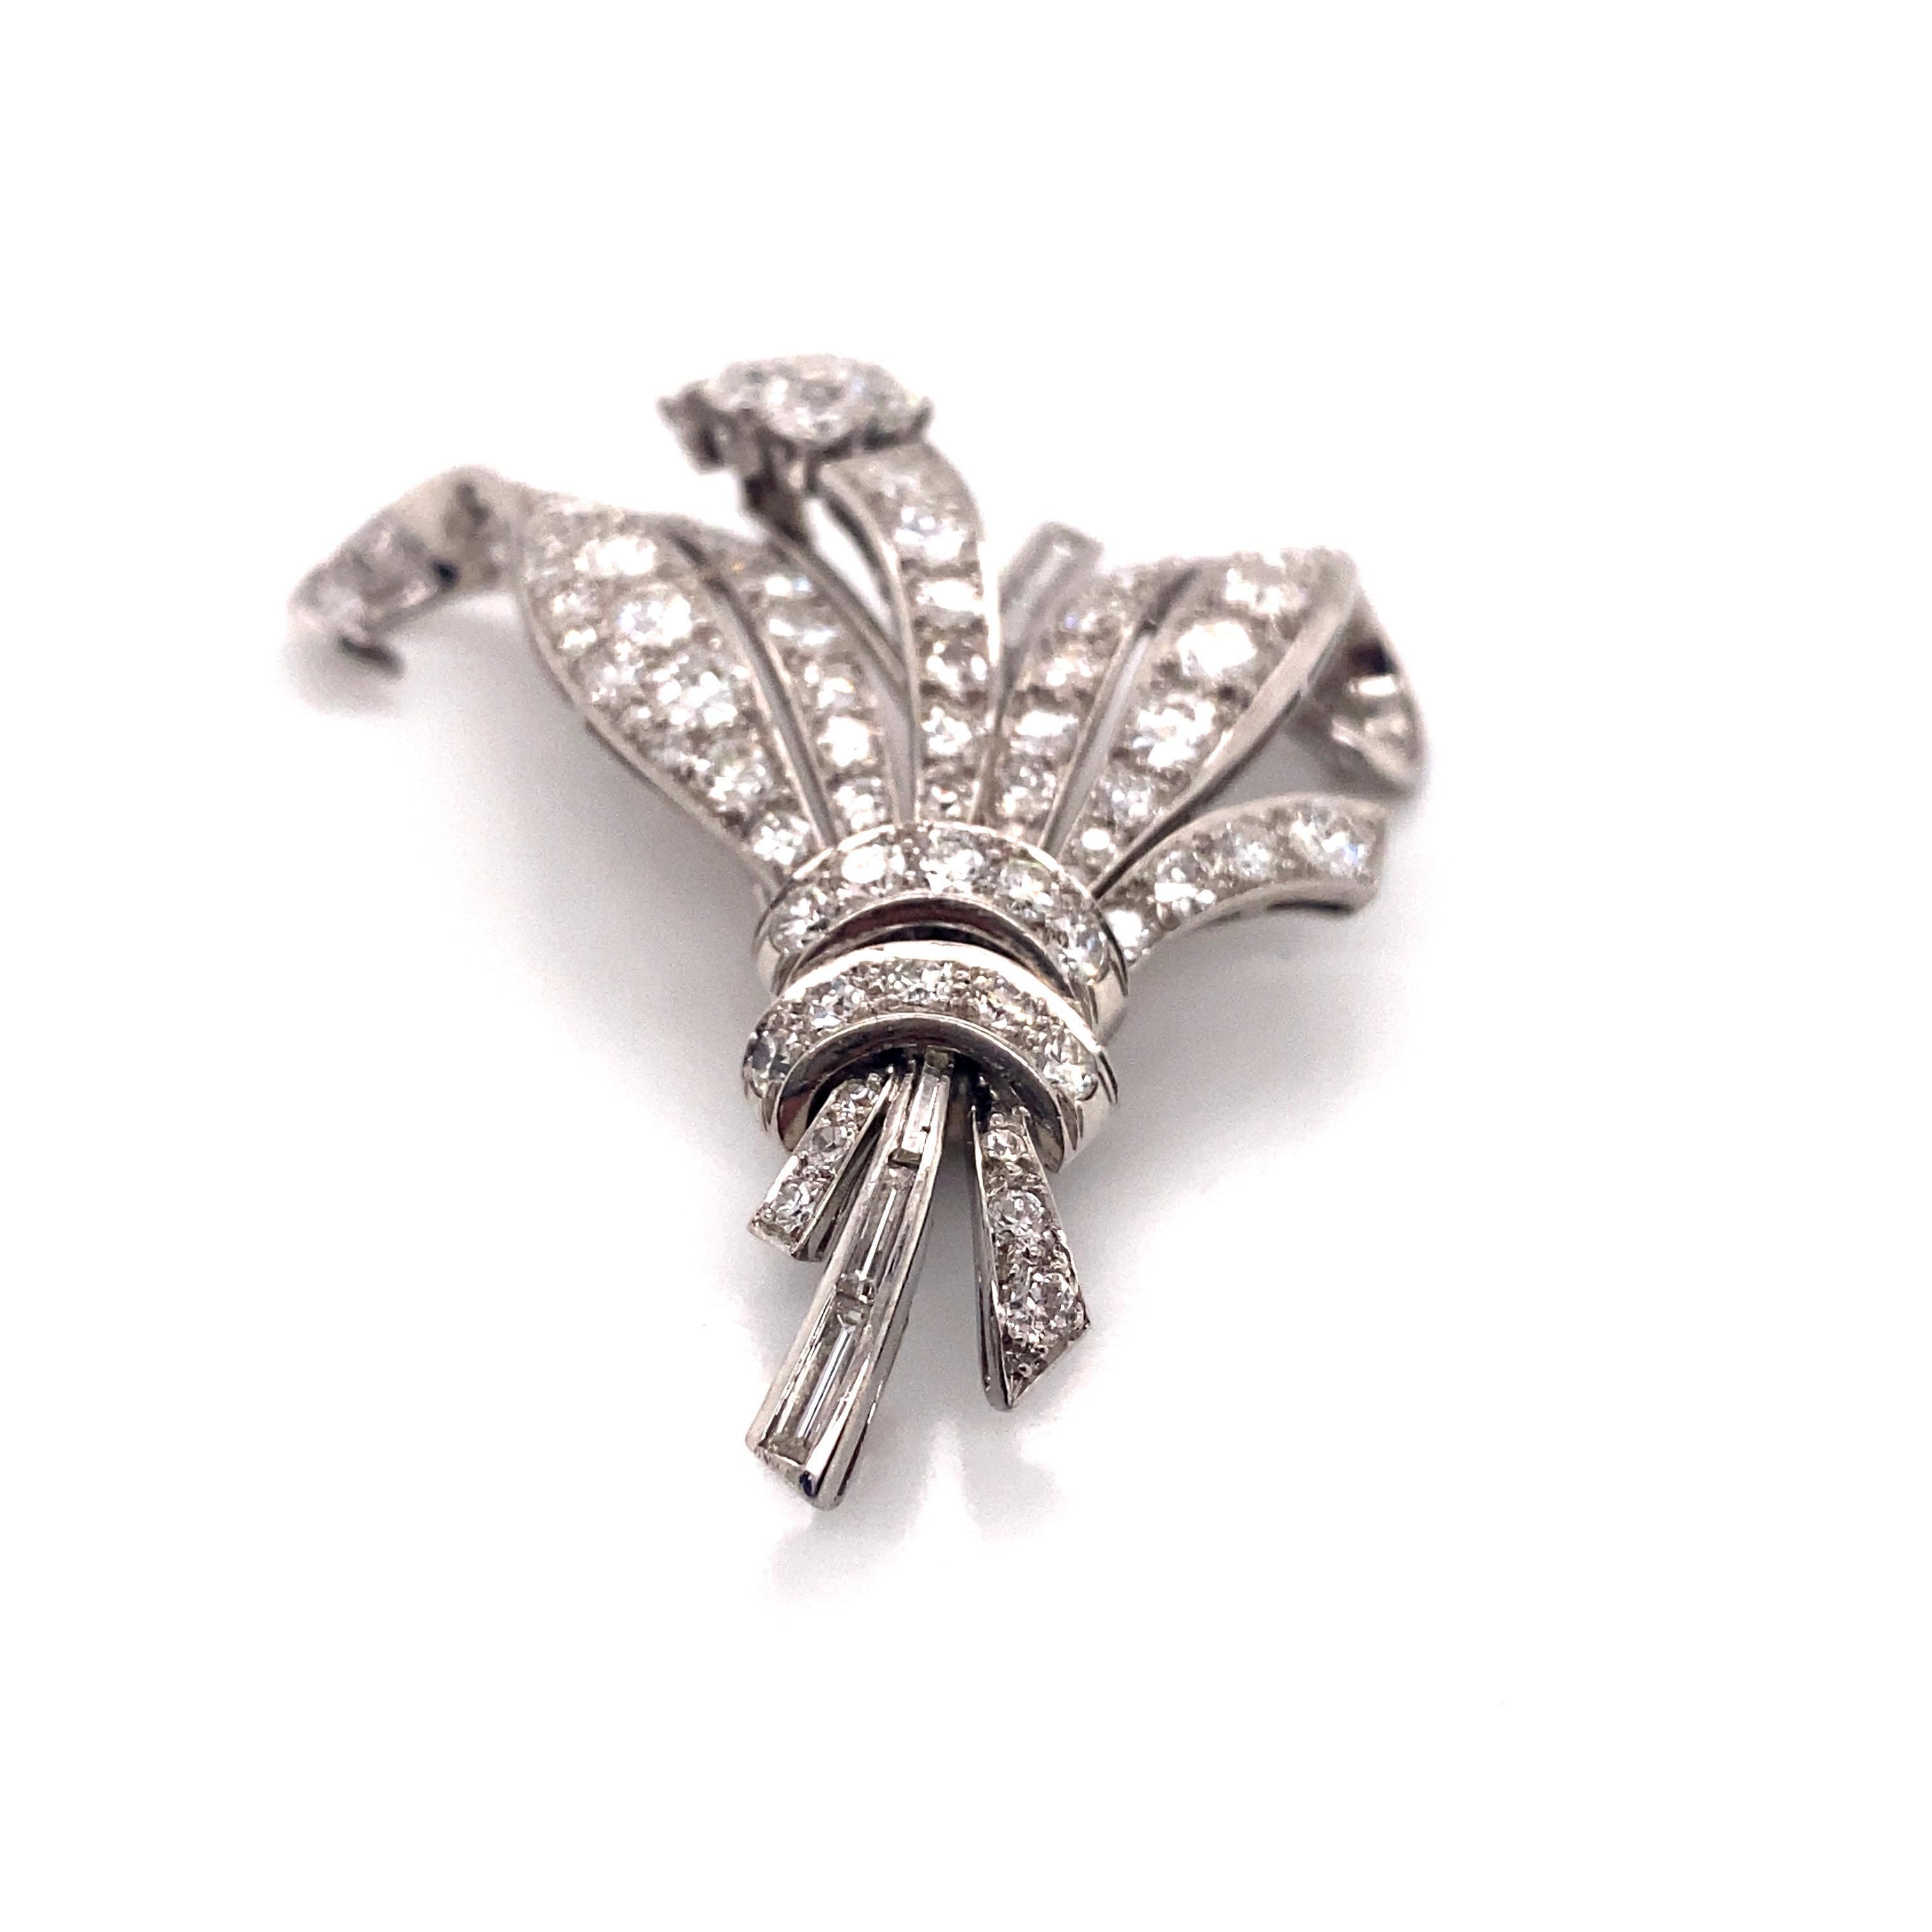 Cette broche exquise est un exemple stupéfiant de l'artisanat de la joaillerie des années 1960. Réalisée en platine luxueux, elle présente un bouquet orné de 87 diamants ronds et brillants totalisant 5,79 carats. Les diamants présentent une couleur